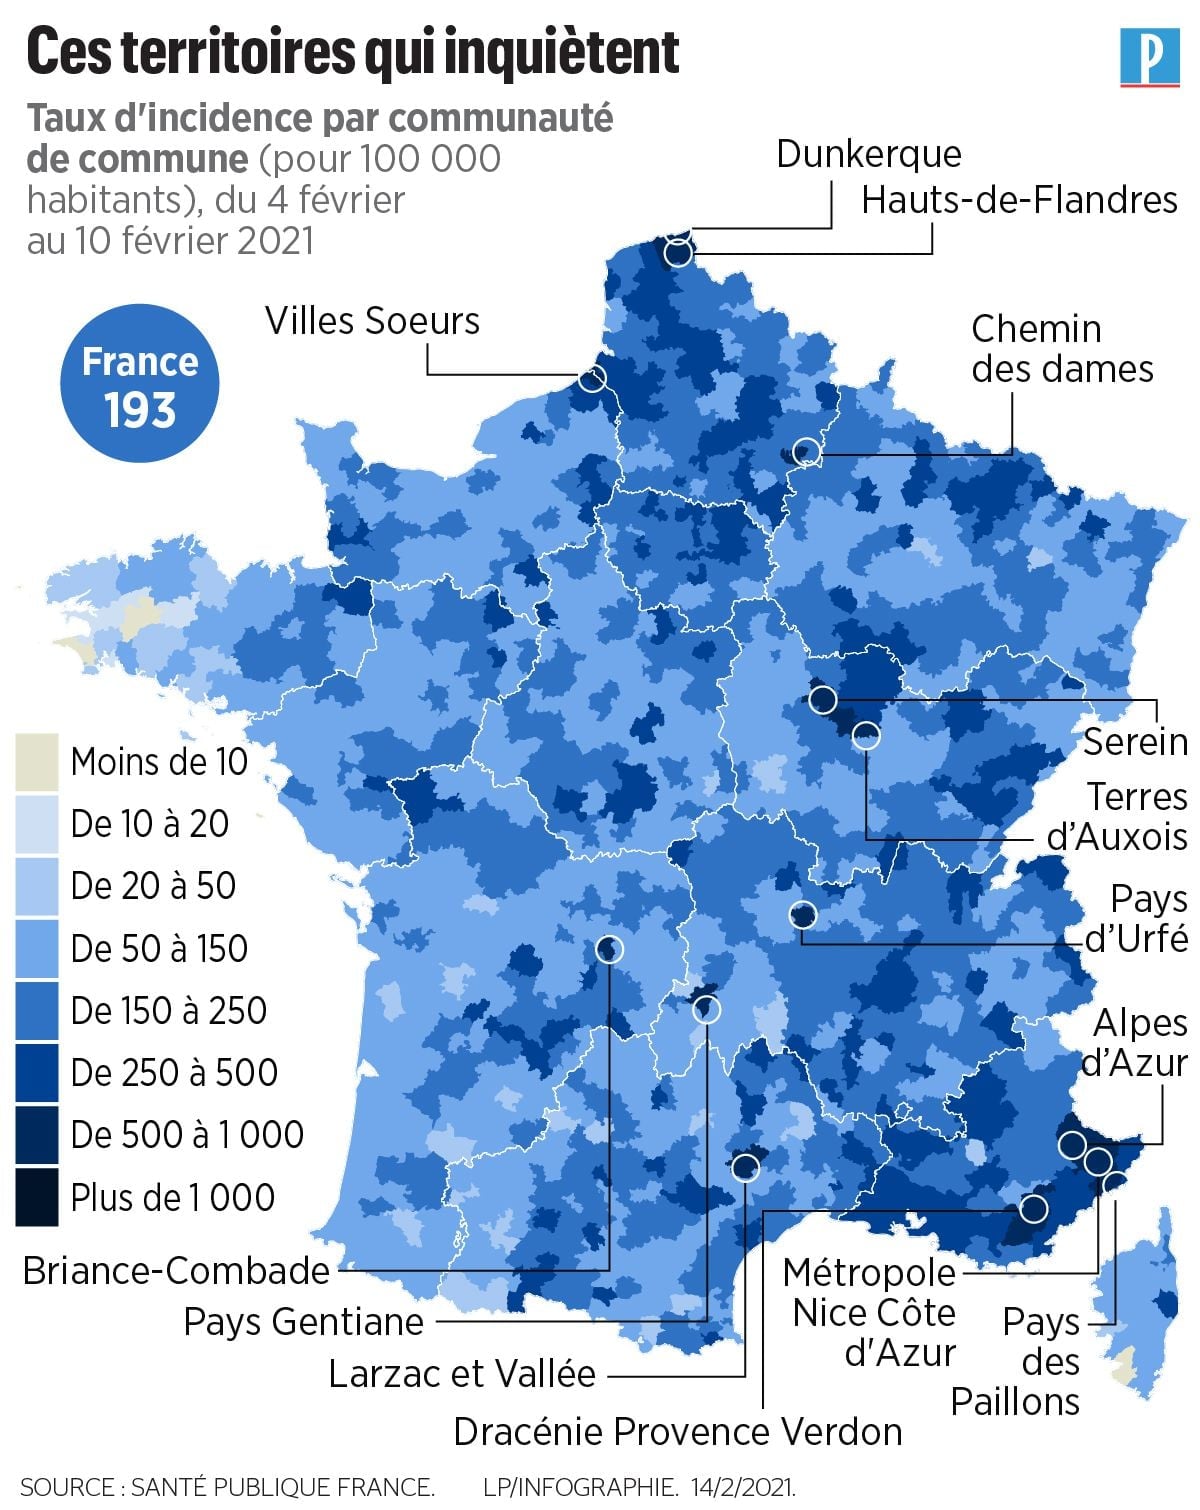 2021 年 2 月 4 日到 10 日法国市镇公共社区每 10 万人确诊数 (Le Parisien)